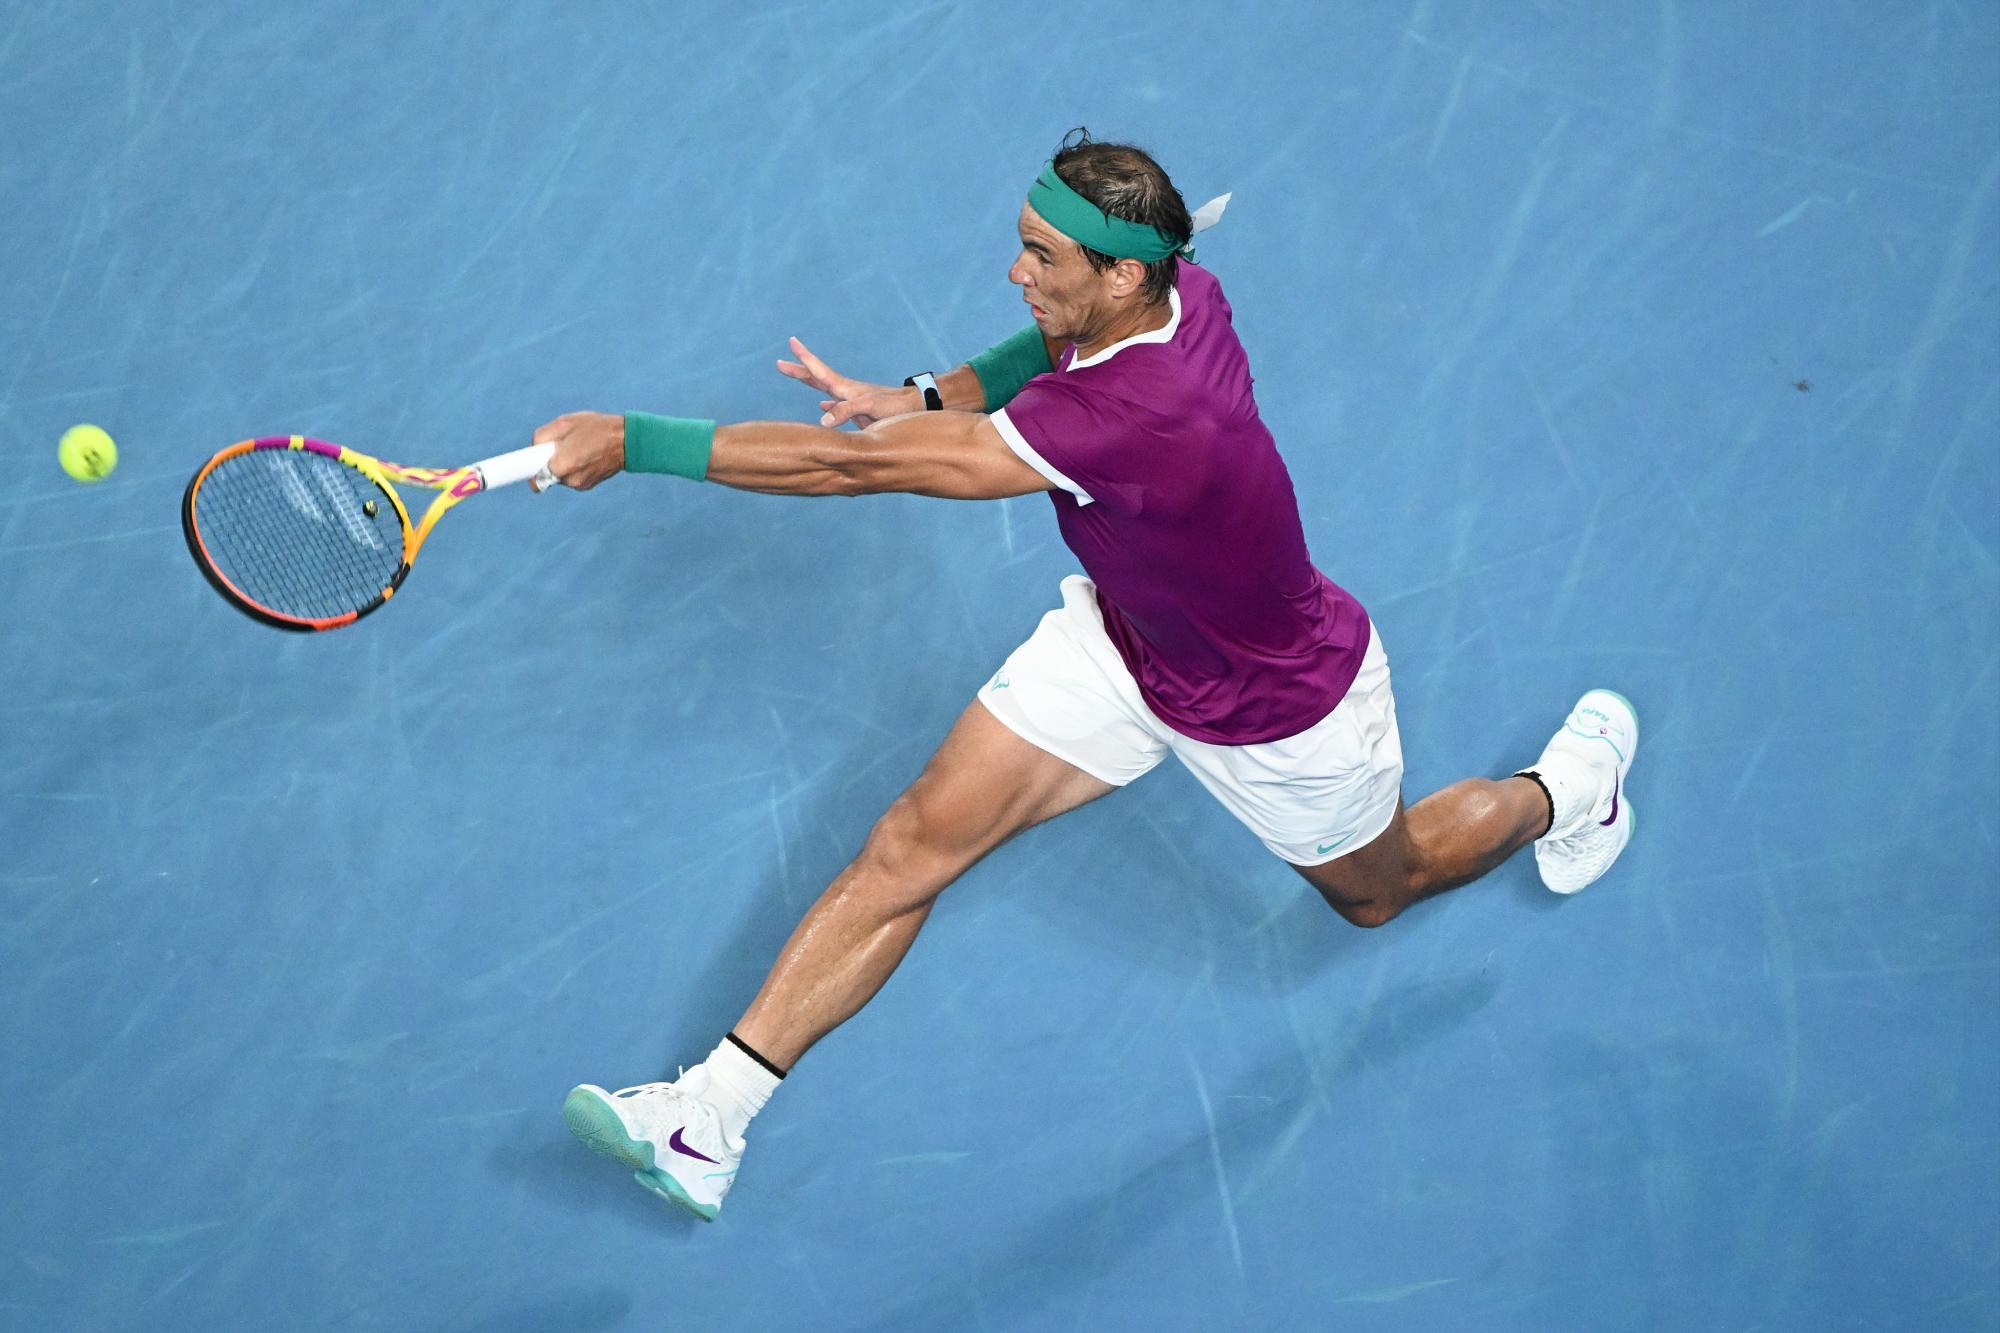 $!Nadal gana Australia y se convierte en el jugador con más títulos de Grand Slam